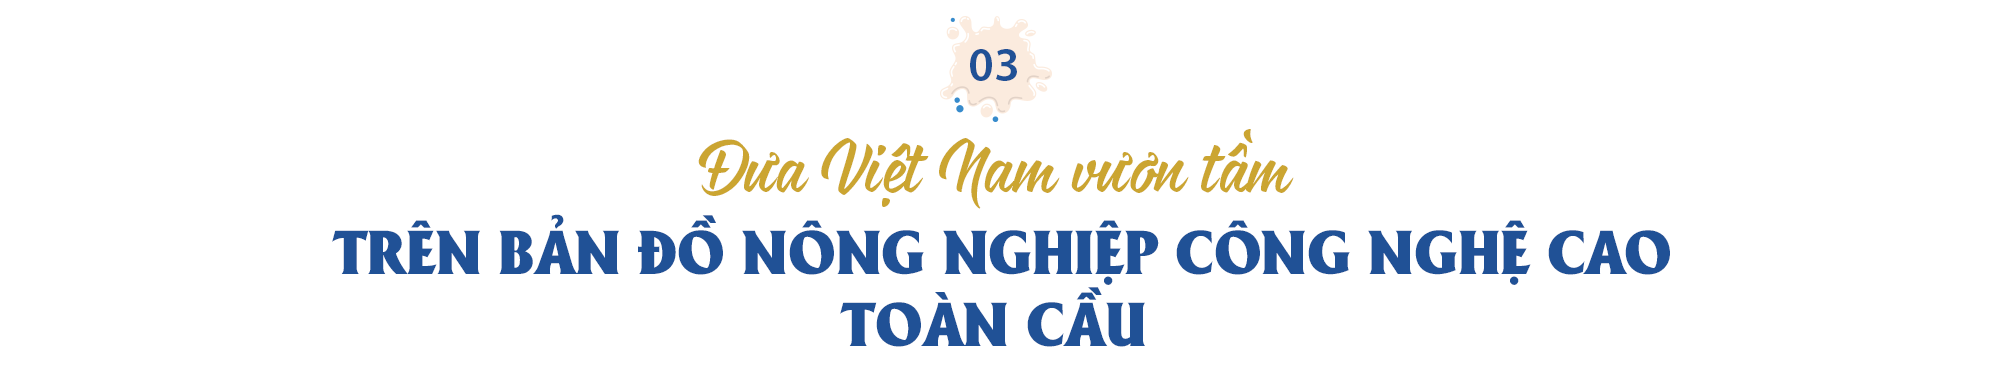 Tổng Giám đốc người Israel của TH true MILK: Nông nghiệp công nghệ cao của Việt Nam đã được “xuất khẩu” - Ảnh 6.